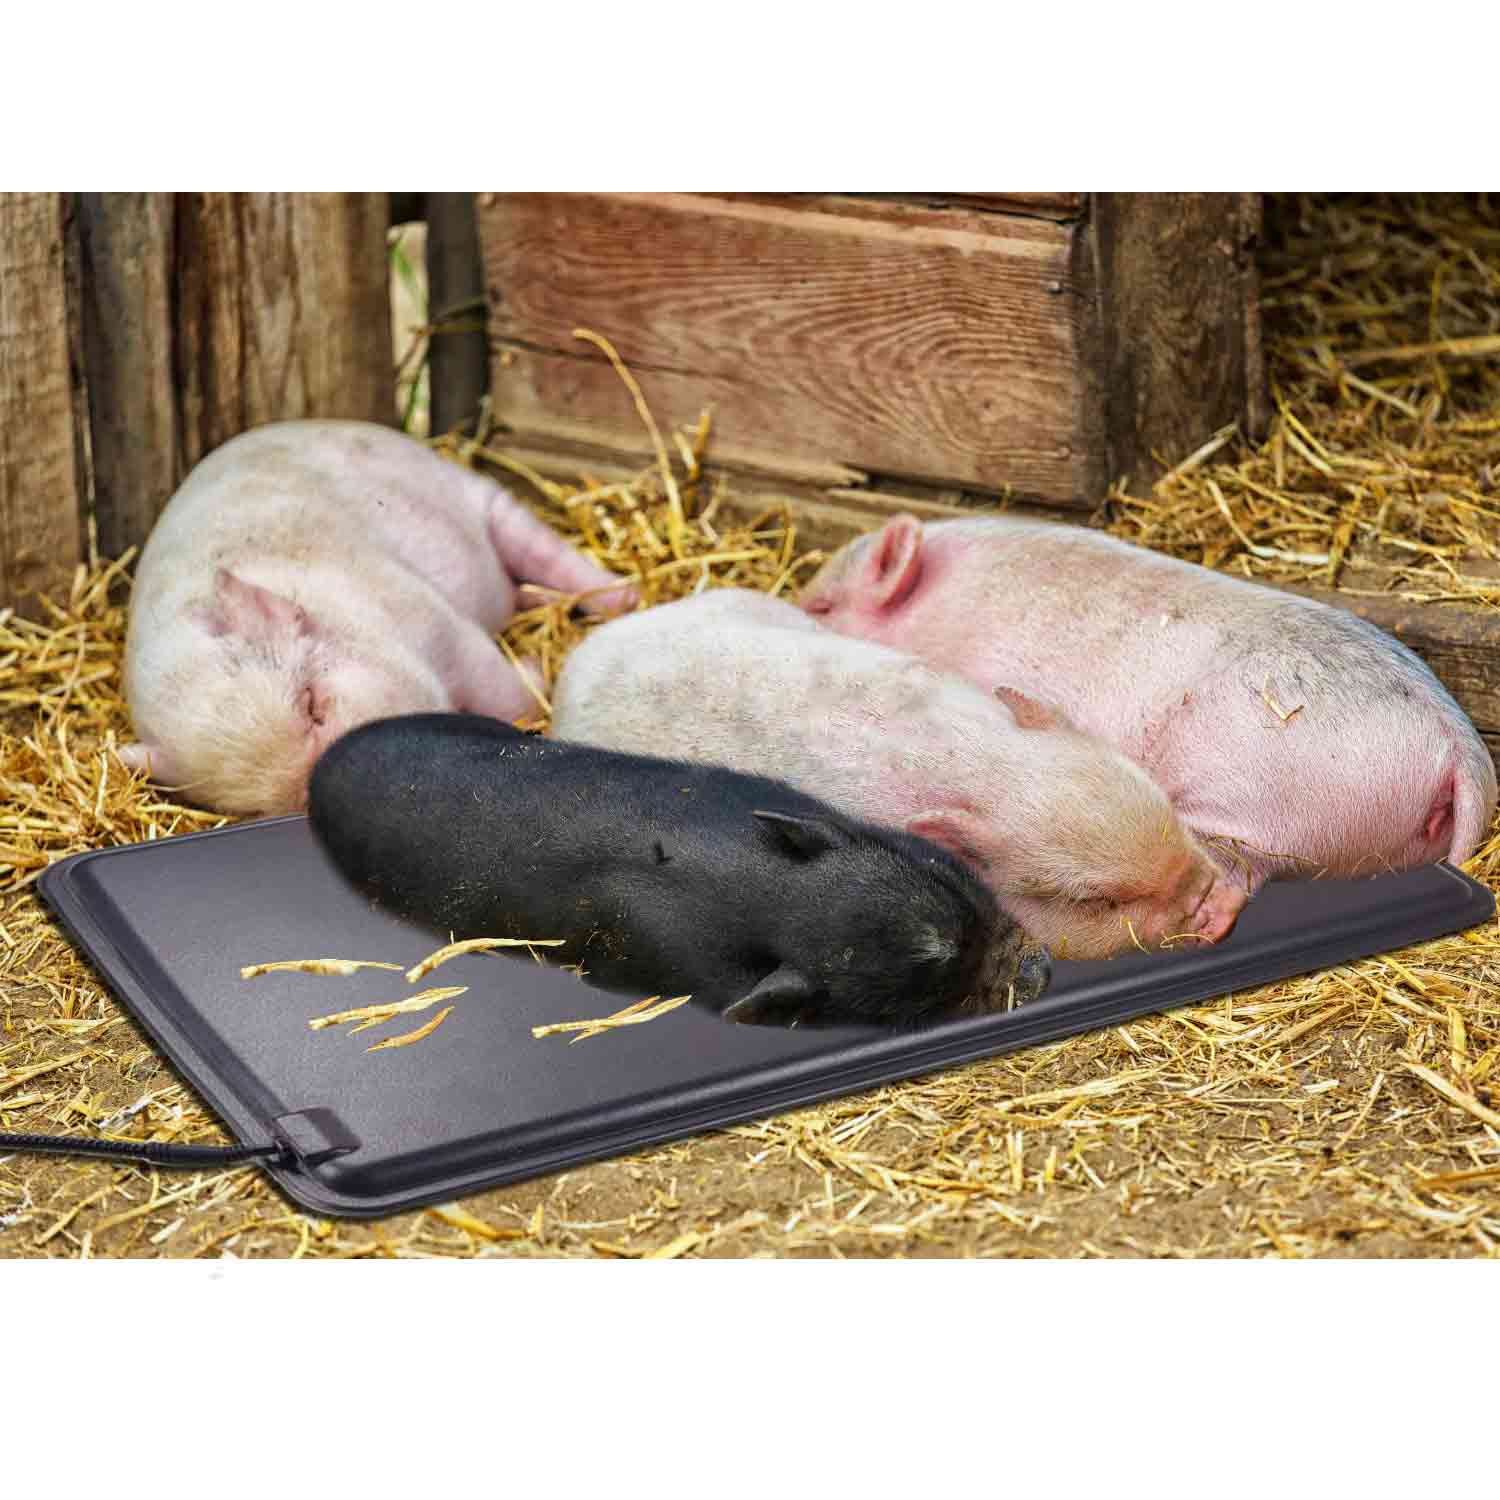 Piggy heating plate